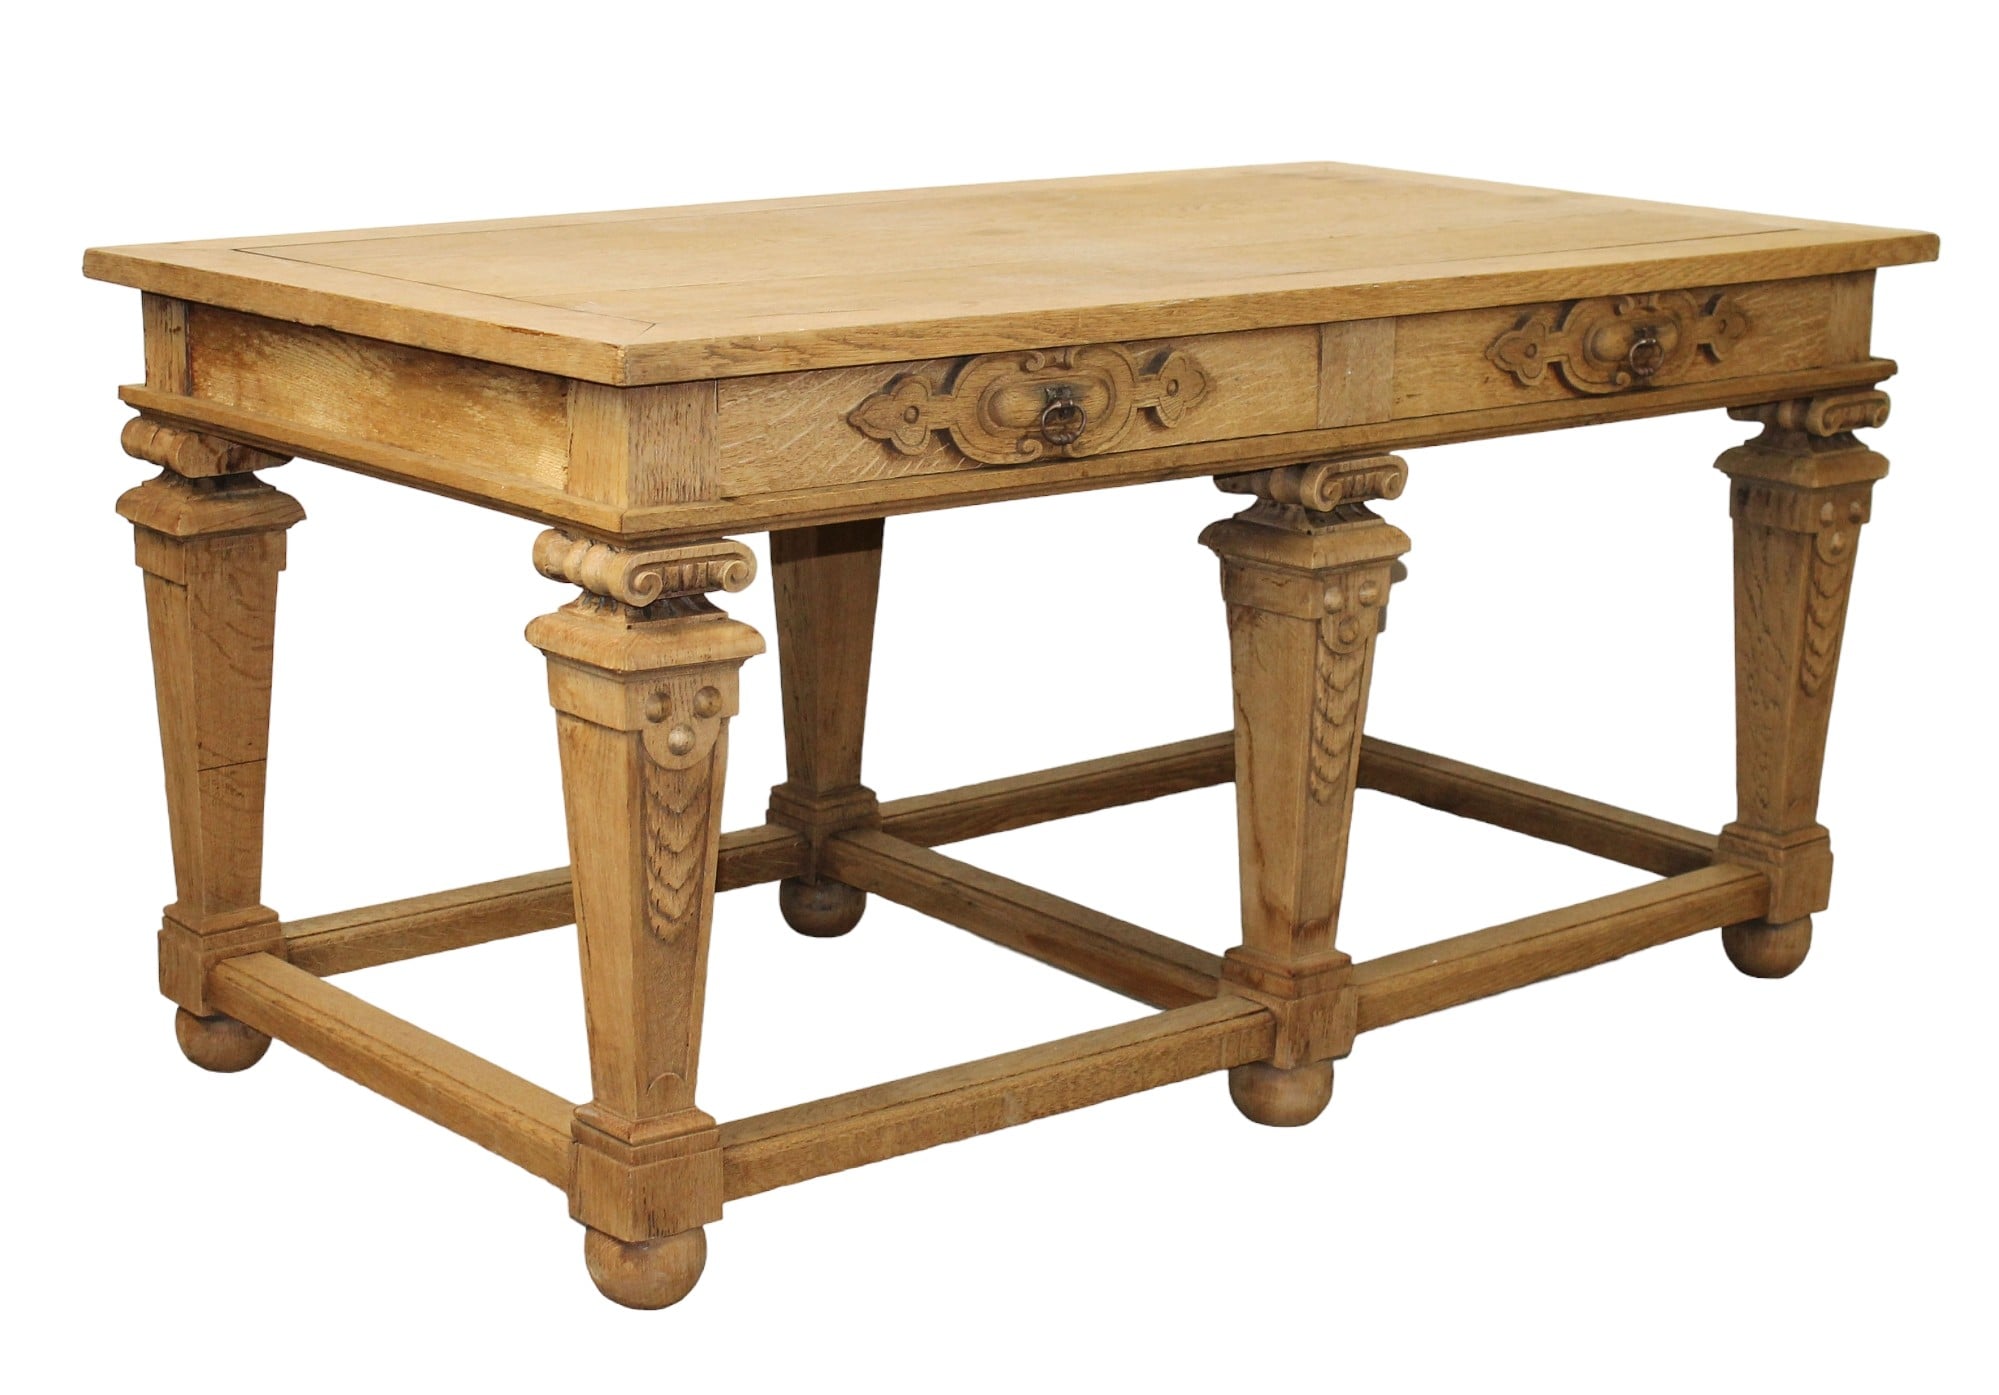 French Renaissance revival bleached oak table